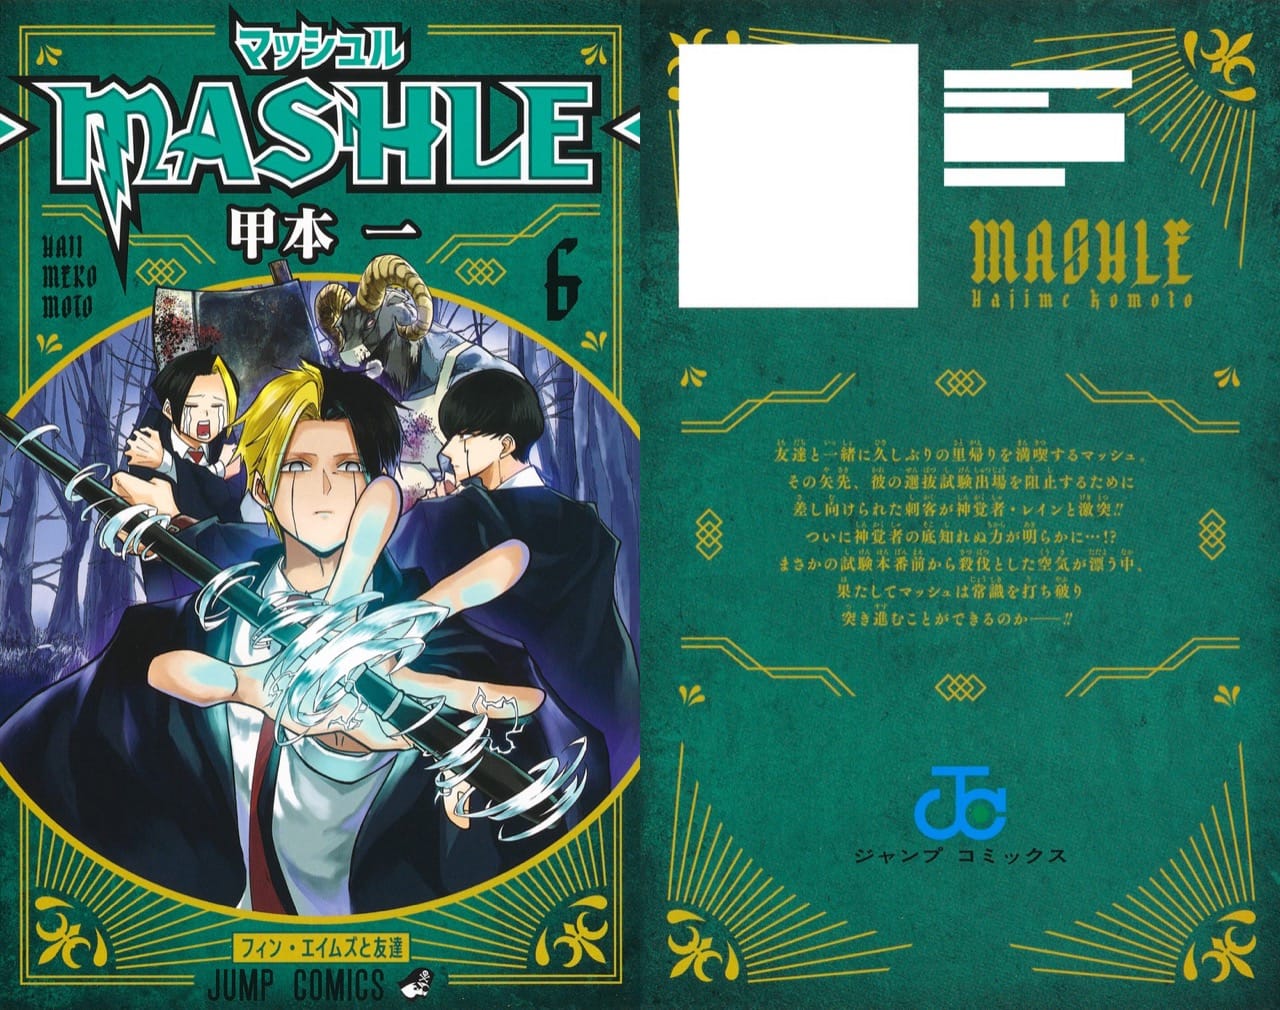 甲本一「マッシュル-MASHLE-」第6巻 2021年4月30日発売!